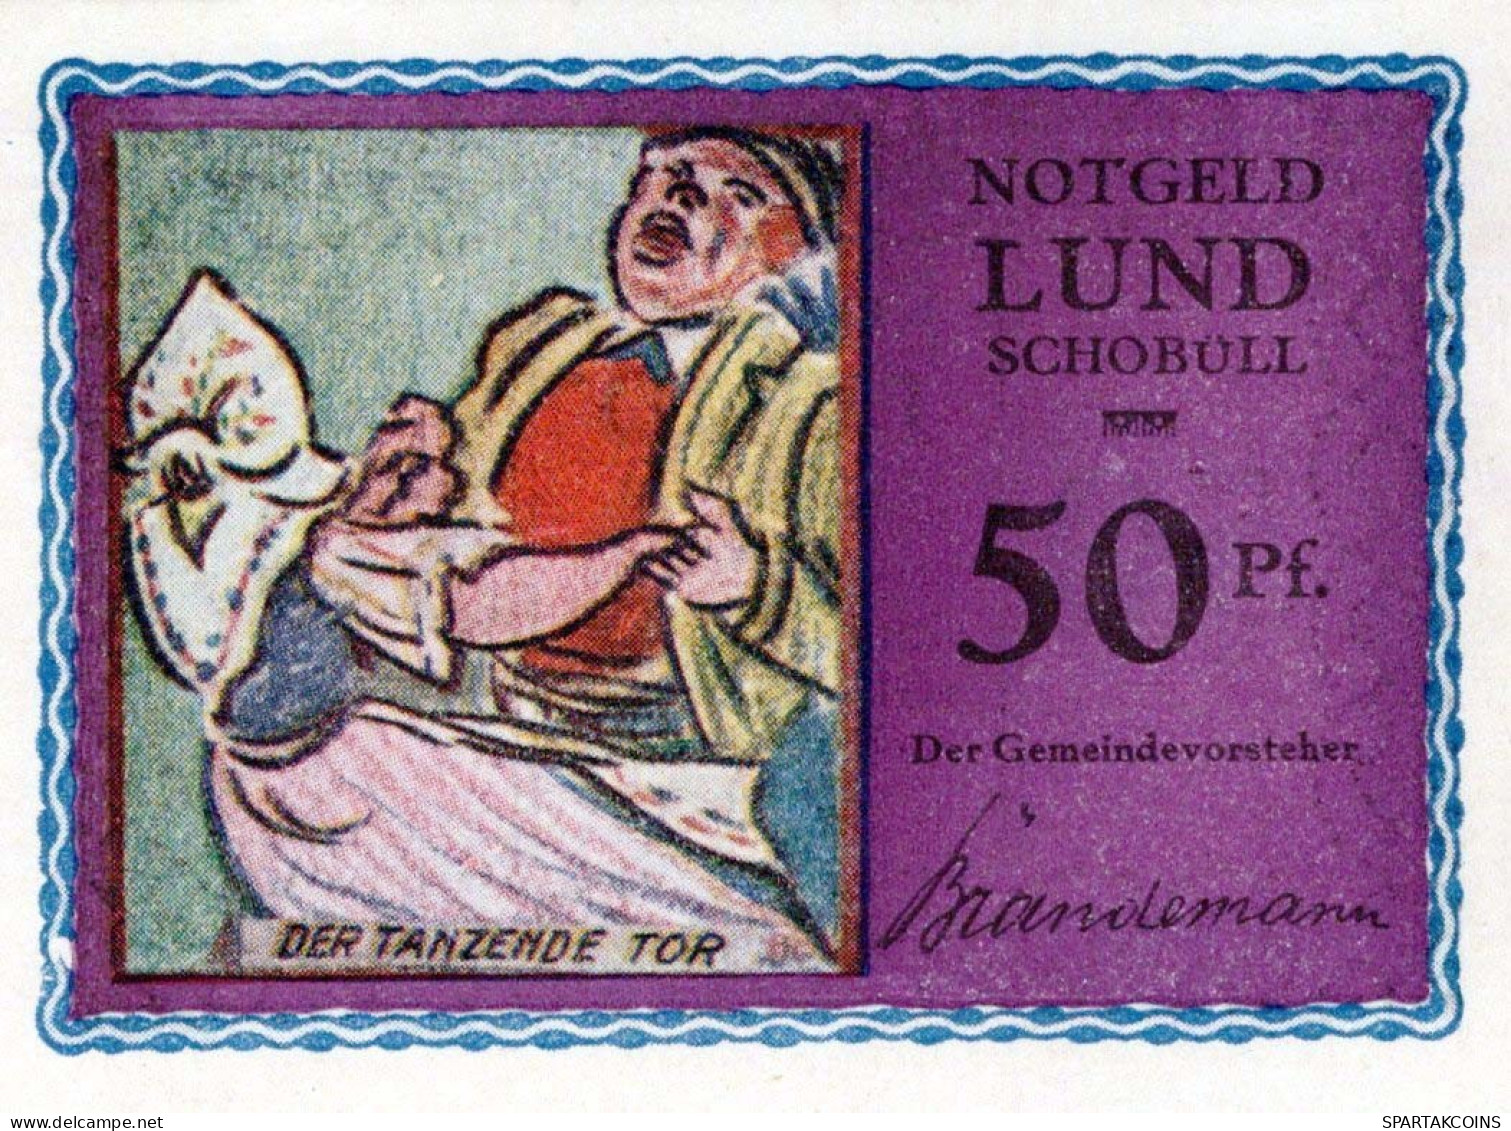 50 PFENNIG 1921/22 LUND-SCHOBÜLL SCHLESWIG HOLSTEIN UNC DEUTSCHLAND #PC669 - [11] Local Banknote Issues